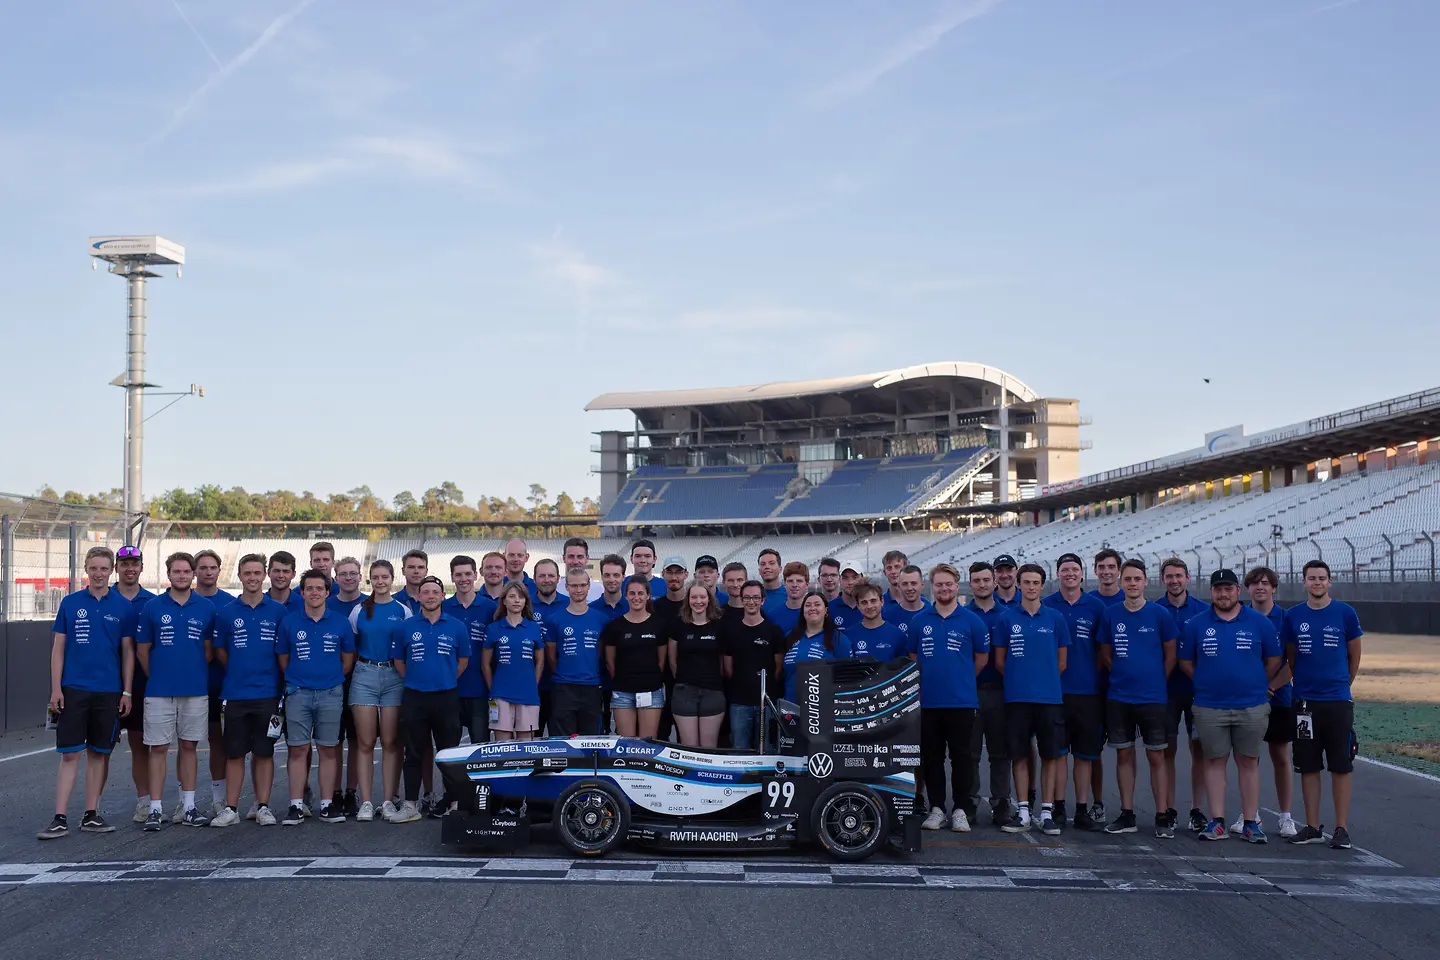 
Henkel unterstützt beim Konstruktionswettbewerb „Formula Student Germany“ 40 Teams mit Lösungen und Expertise, darunter das Team der RWTH Aachen „Ecurie Aix“
(Bild: Ecurie Aix)